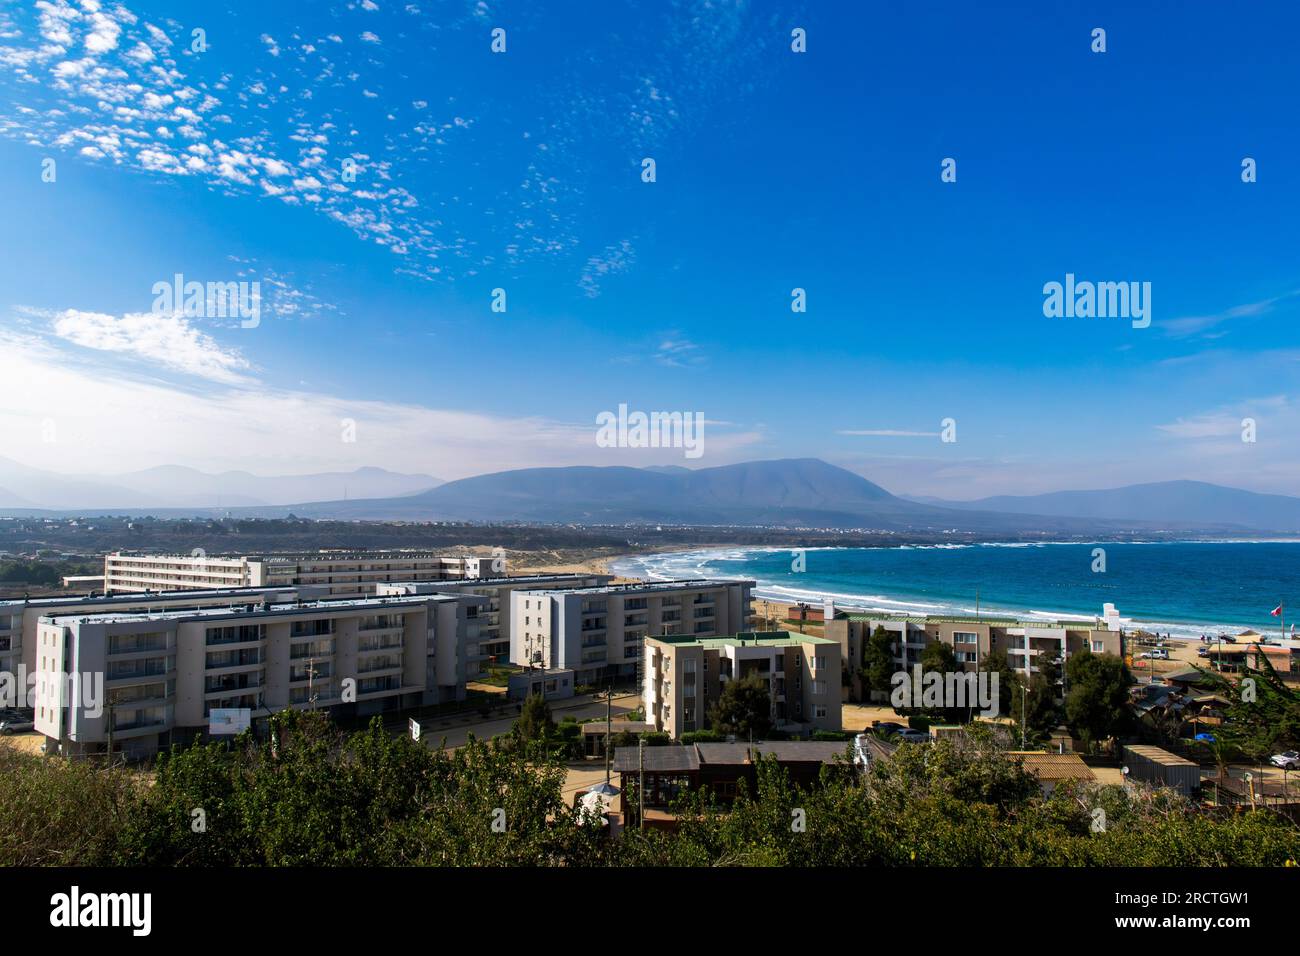 Appartements touristiques construits près de la plage à Los molles, Valparaiso, Chili Banque D'Images